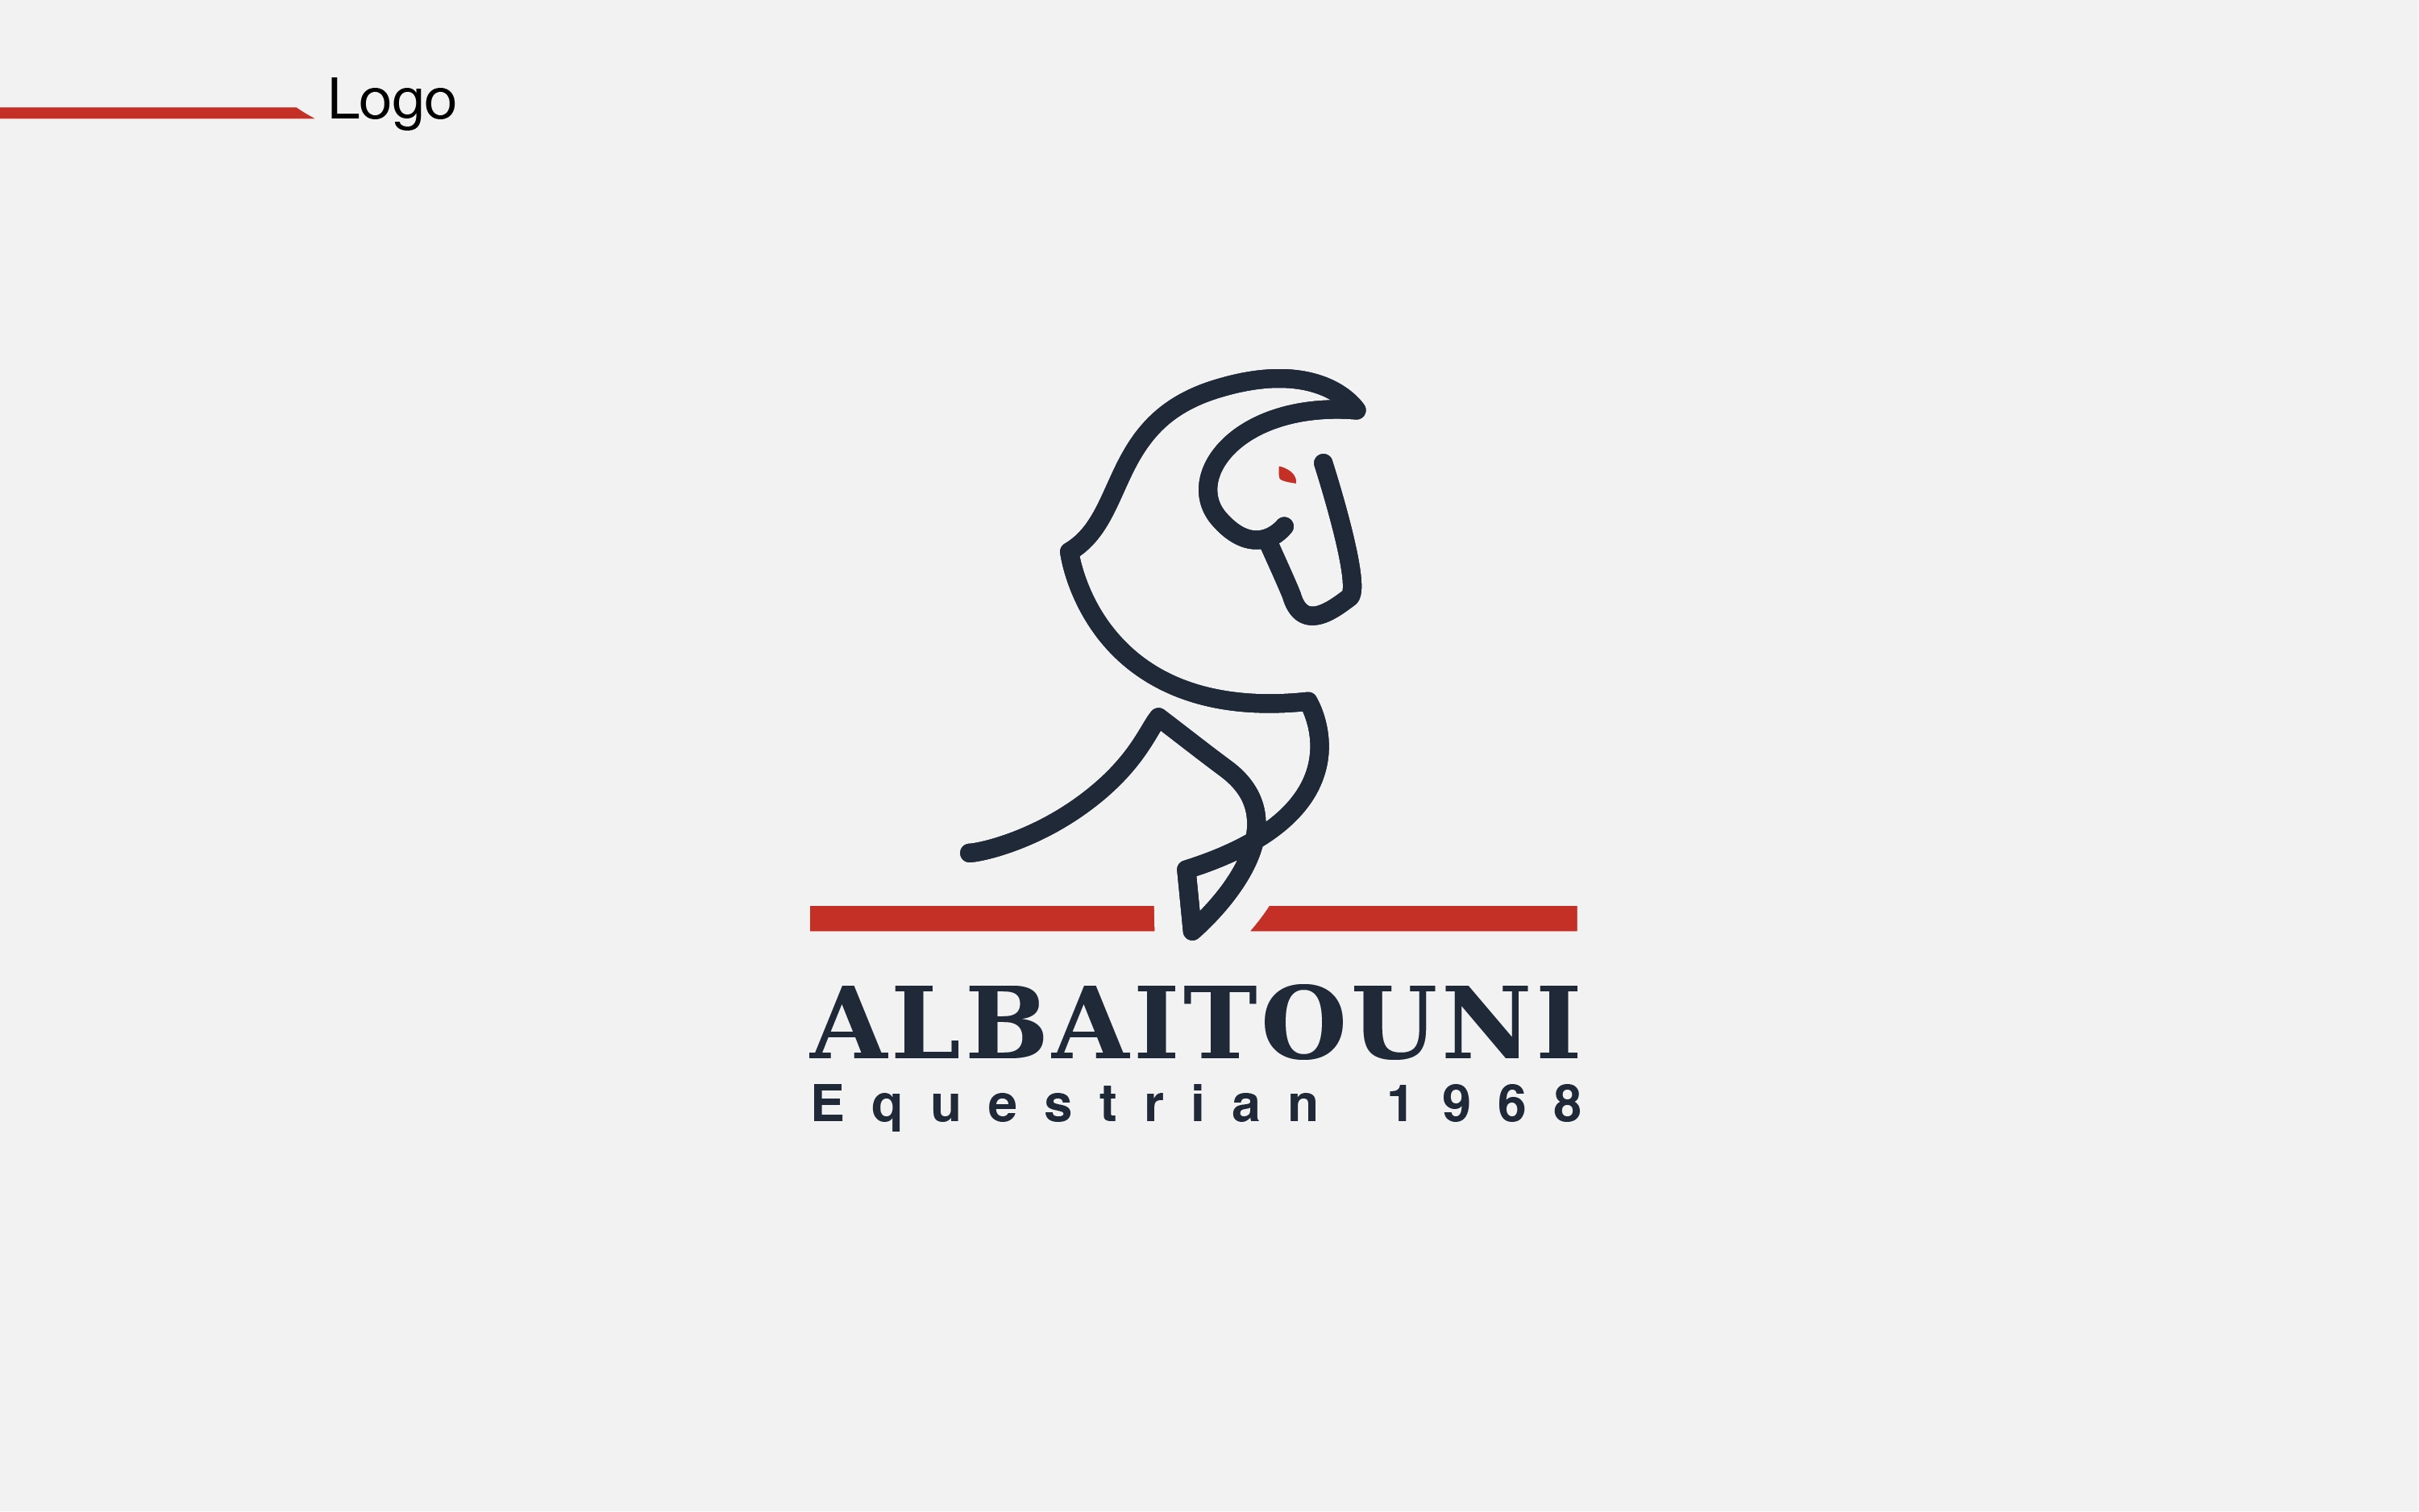 Al-Baytoni Equestrian